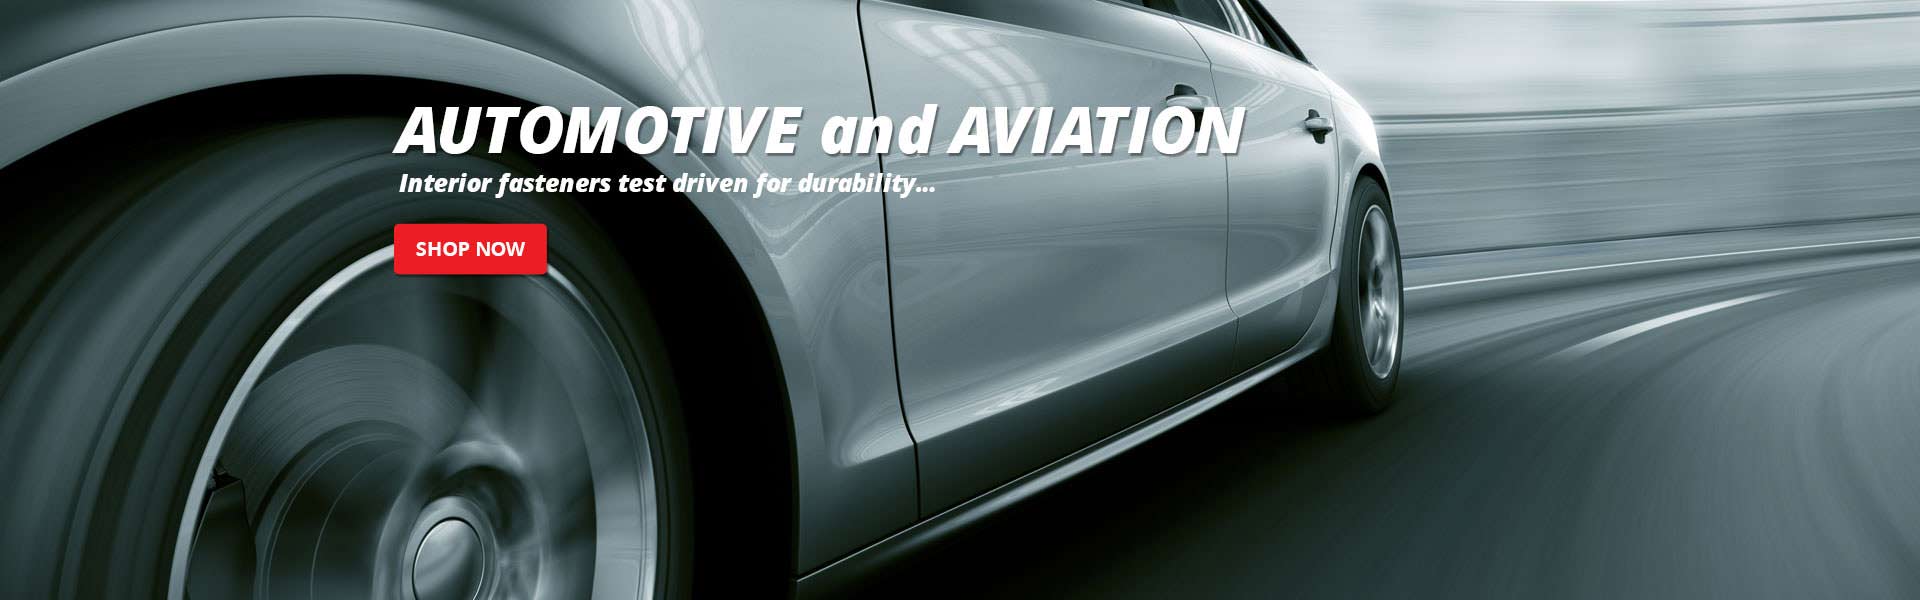 Automotive Campaign Slide